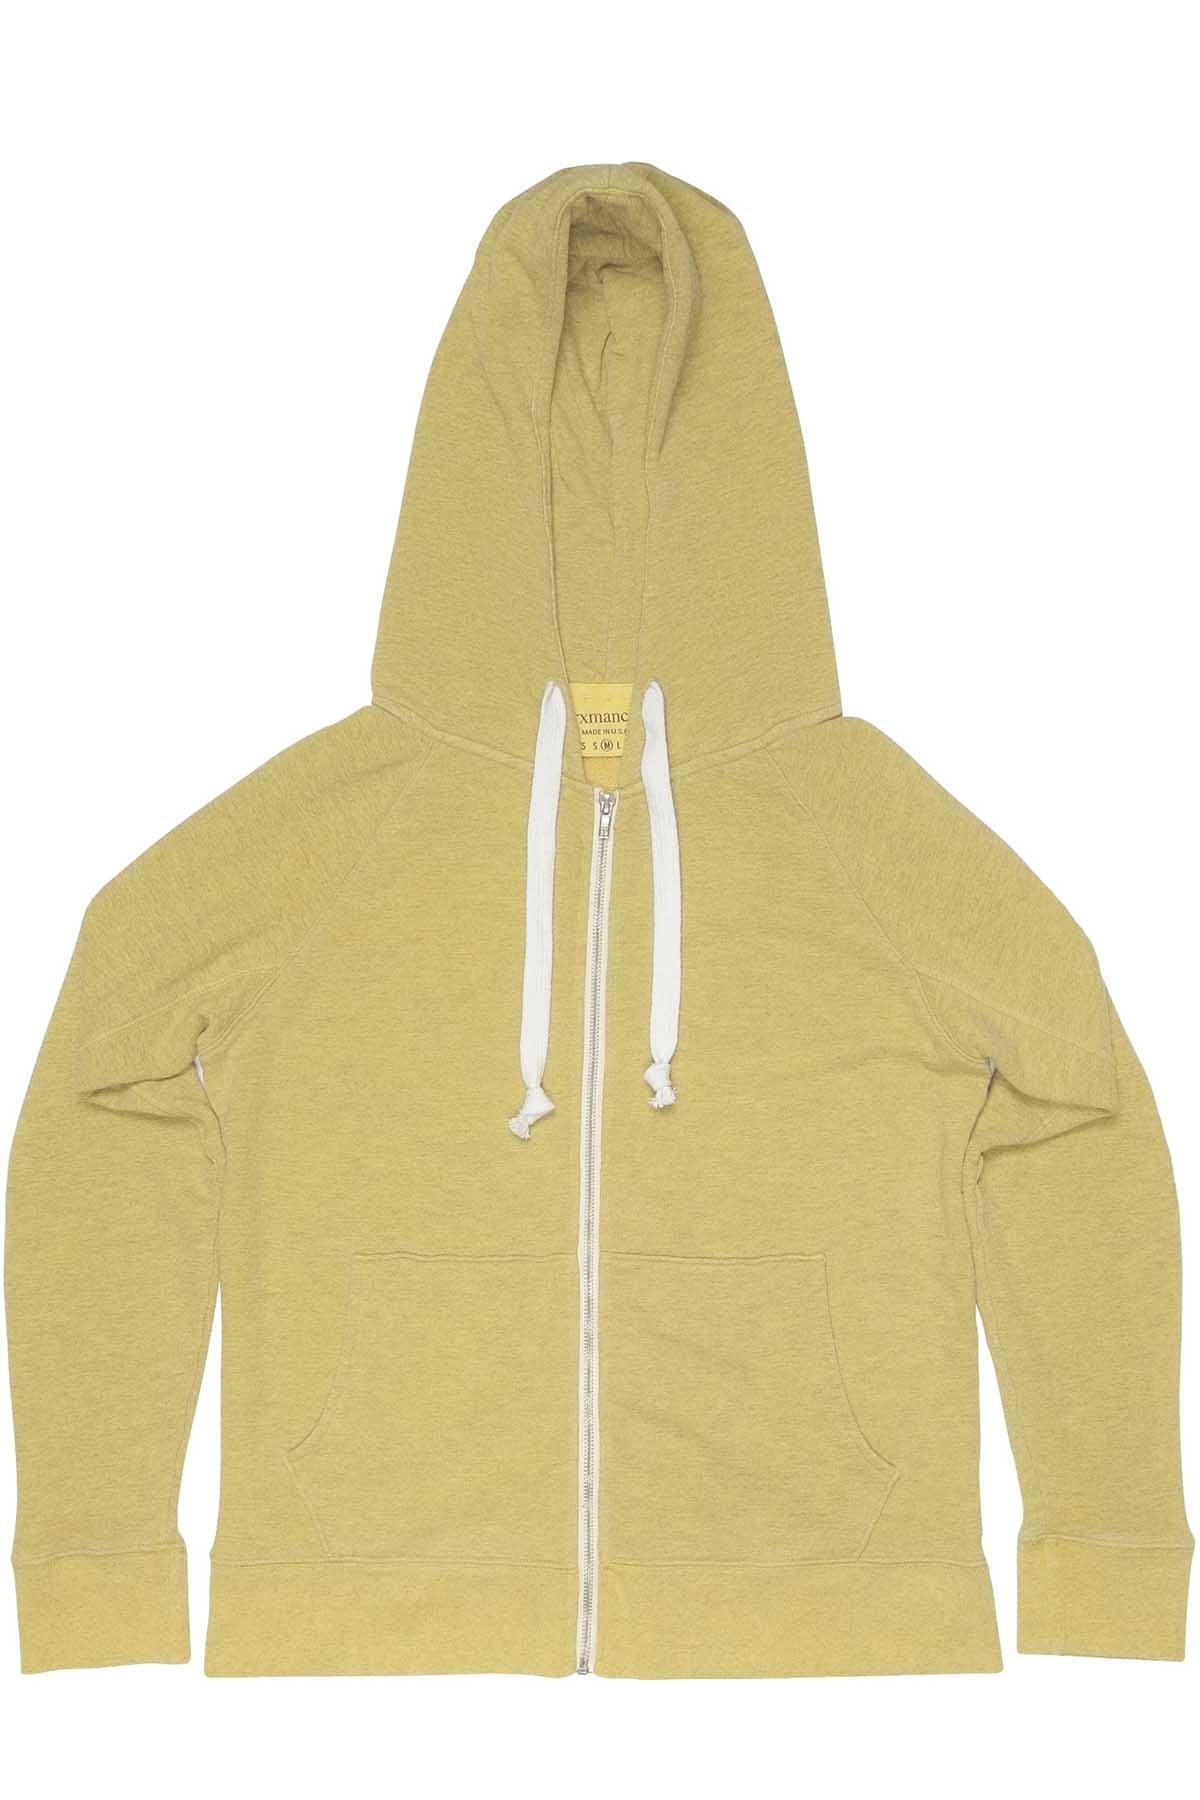 Rxmance Unisex Sunny Yellow Hooded Zip Sweatshirt